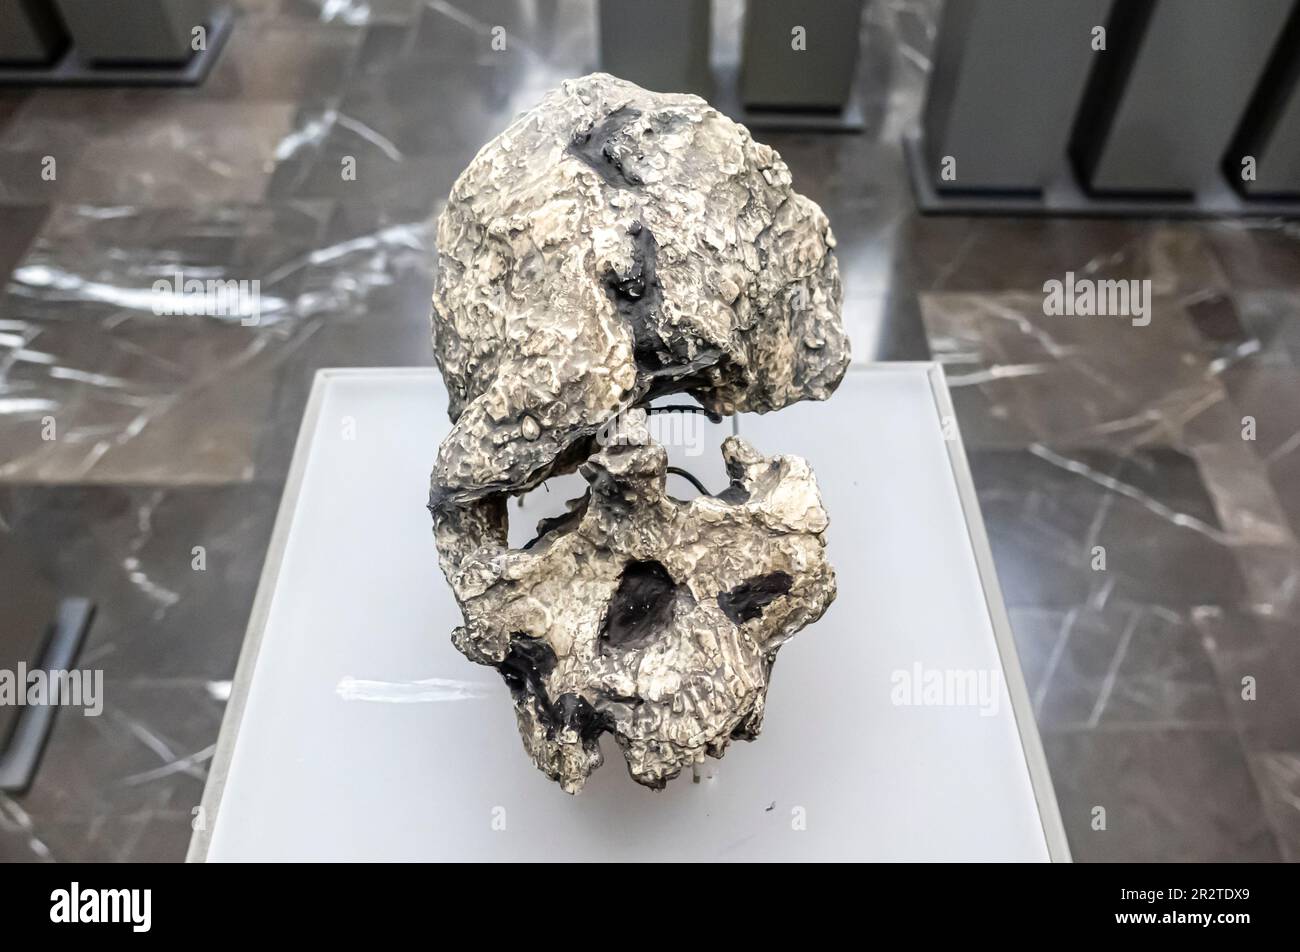 Kenyanthropus platyops skull, Kenyanthropus platyops cranium. KNM-WT 40000, 3.5 million years. Lomekwi Kenya Stock Photo